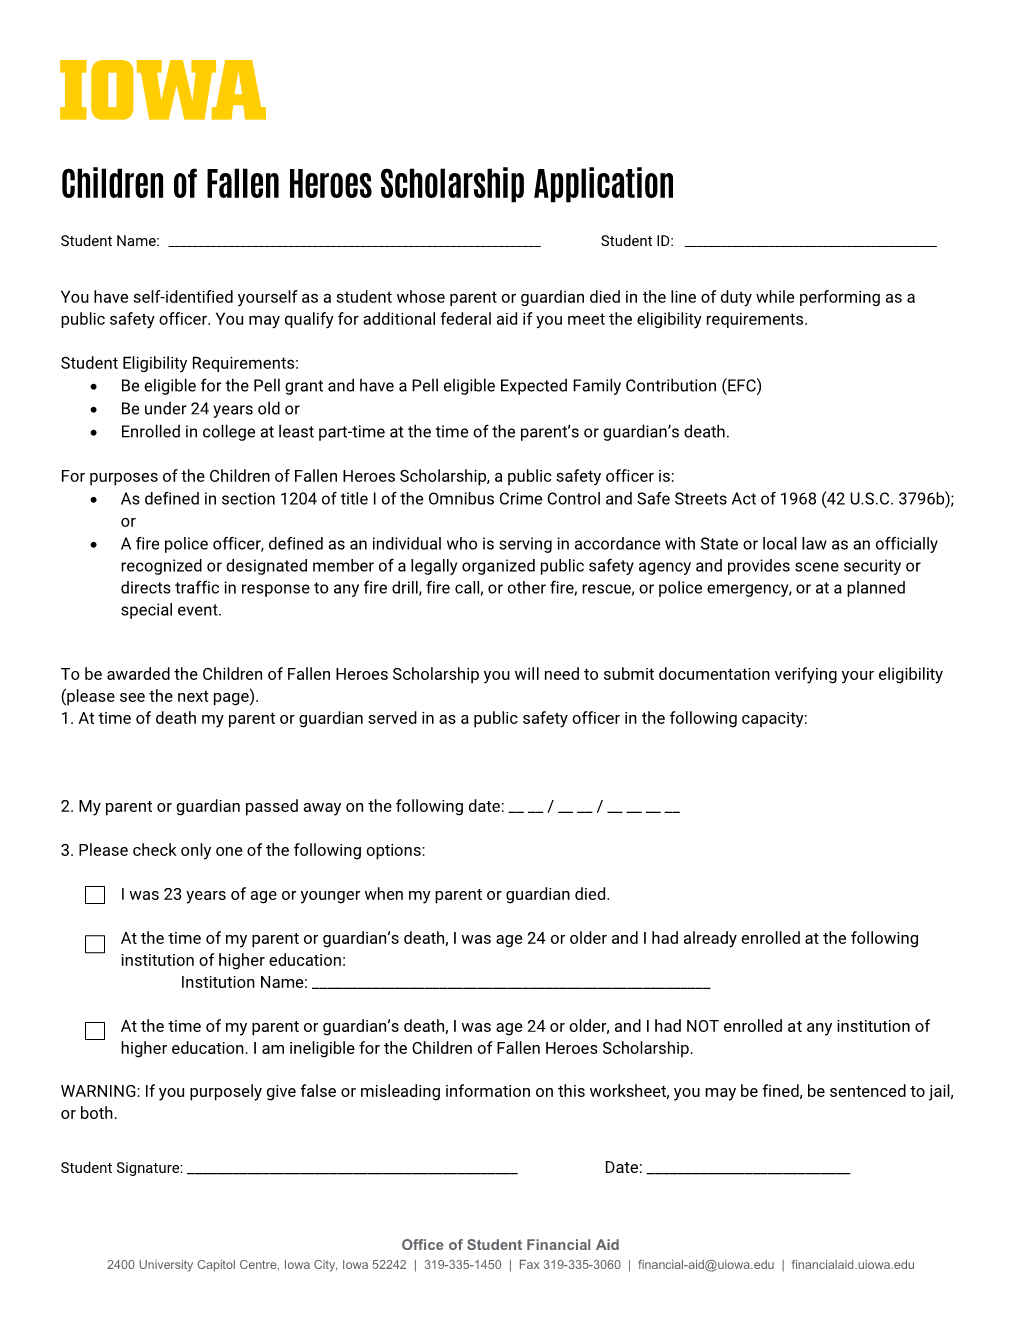 Children of Fallen Heroes Scholarship Application